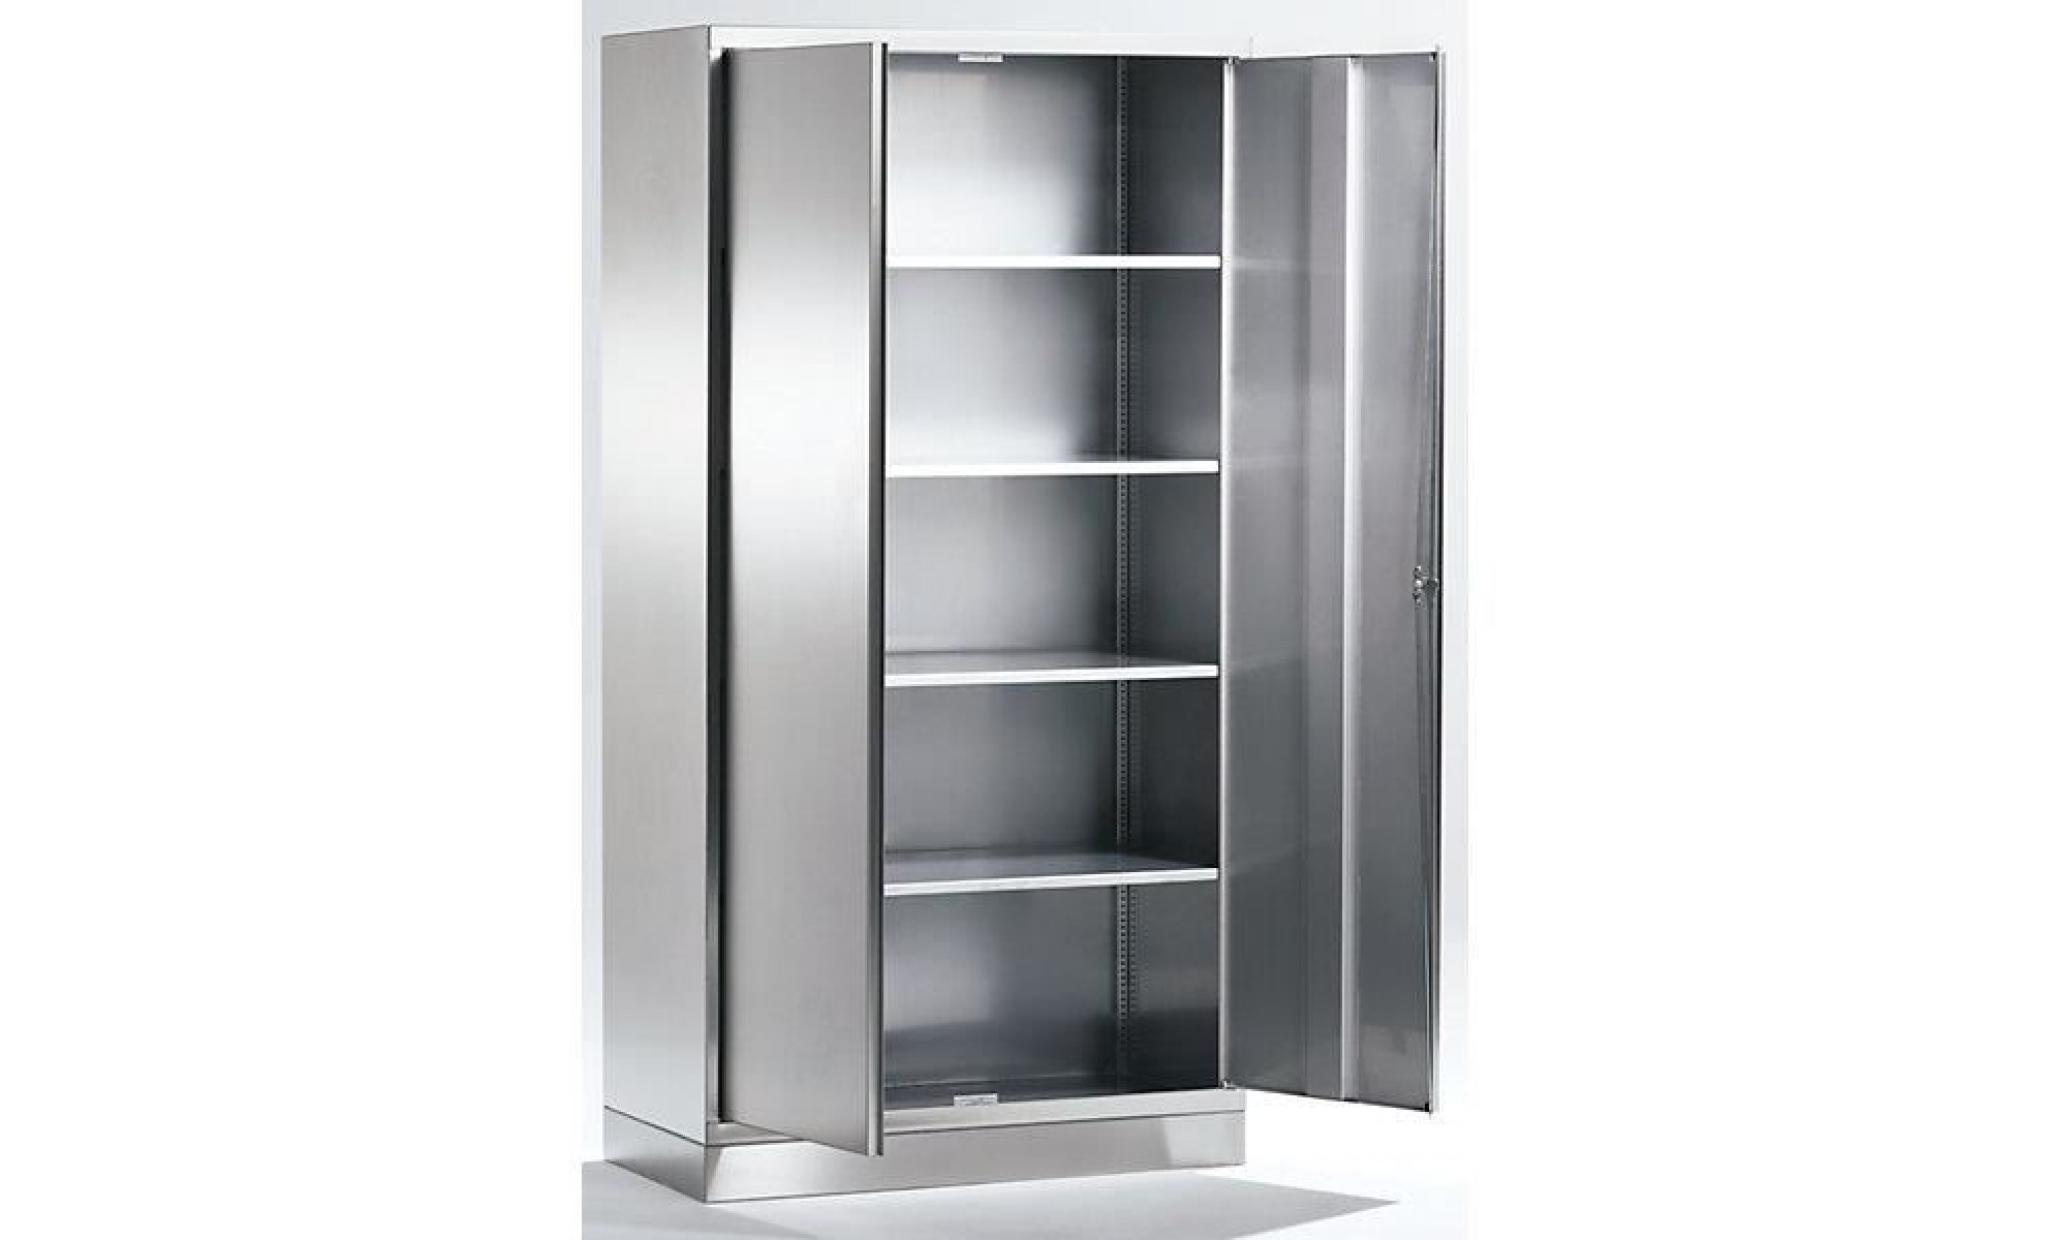 armoire universelle en inox   armoire à portes battantes h x l x p 1950 x 1000 x 400 mm   armoire armoire de vestiaire armoire